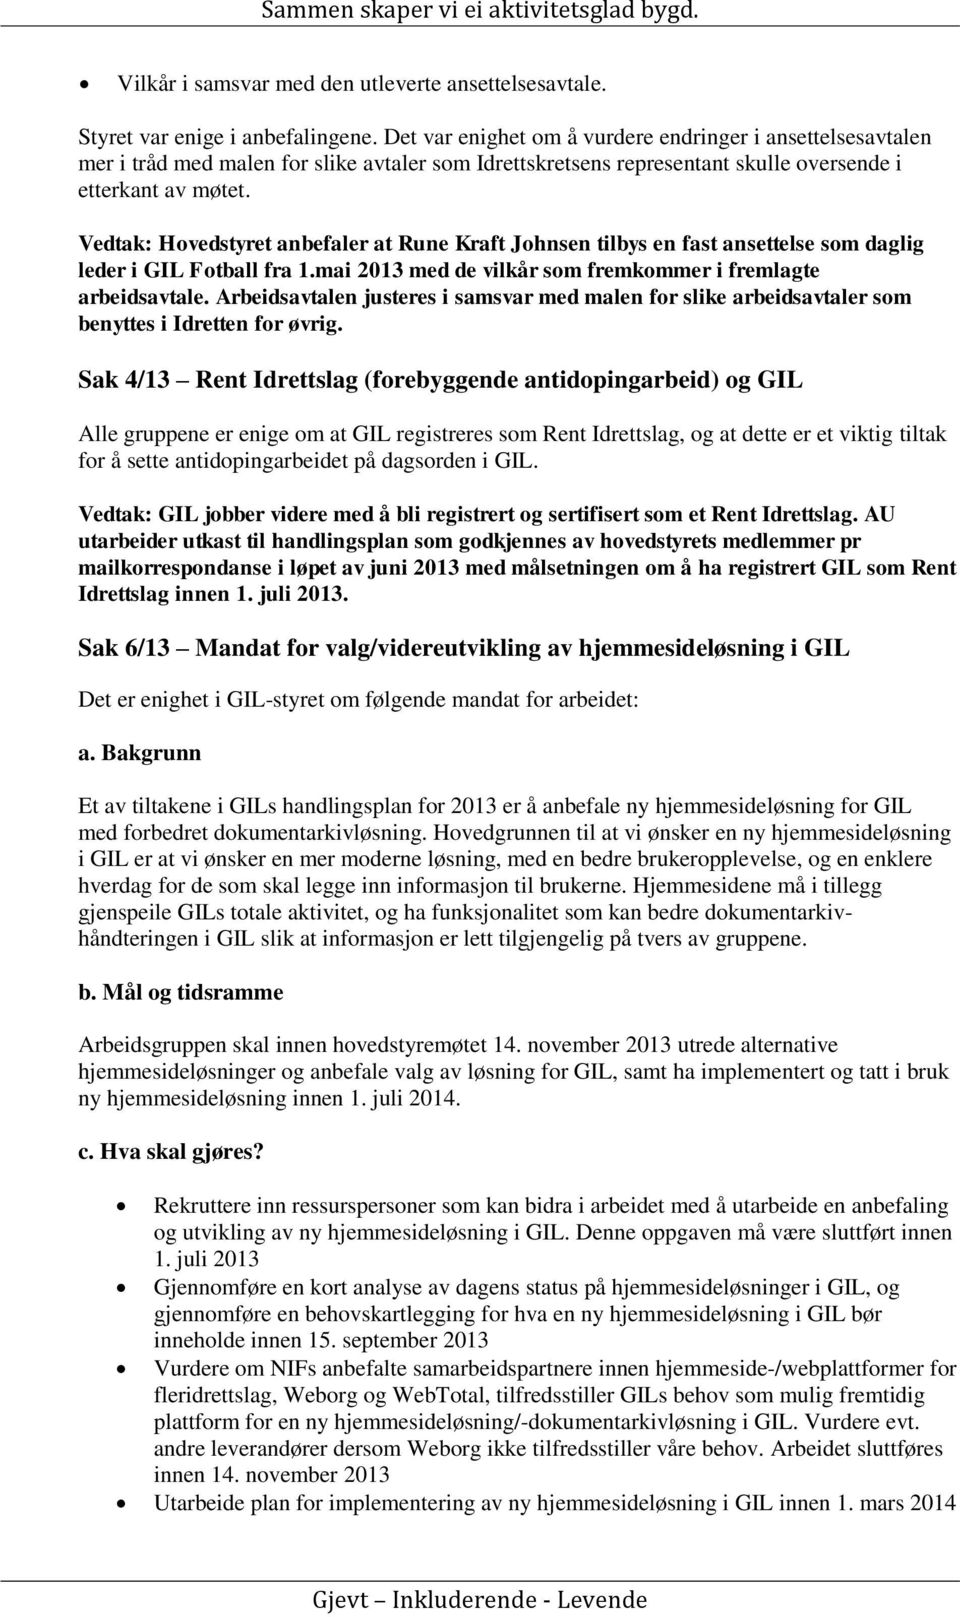 Vedtak: Hovedstyret anbefaler at Rune Kraft Johnsen tilbys en fast ansettelse som daglig leder i GIL Fotball fra 1.mai 2013 med de vilkår som fremkommer i fremlagte arbeidsavtale.